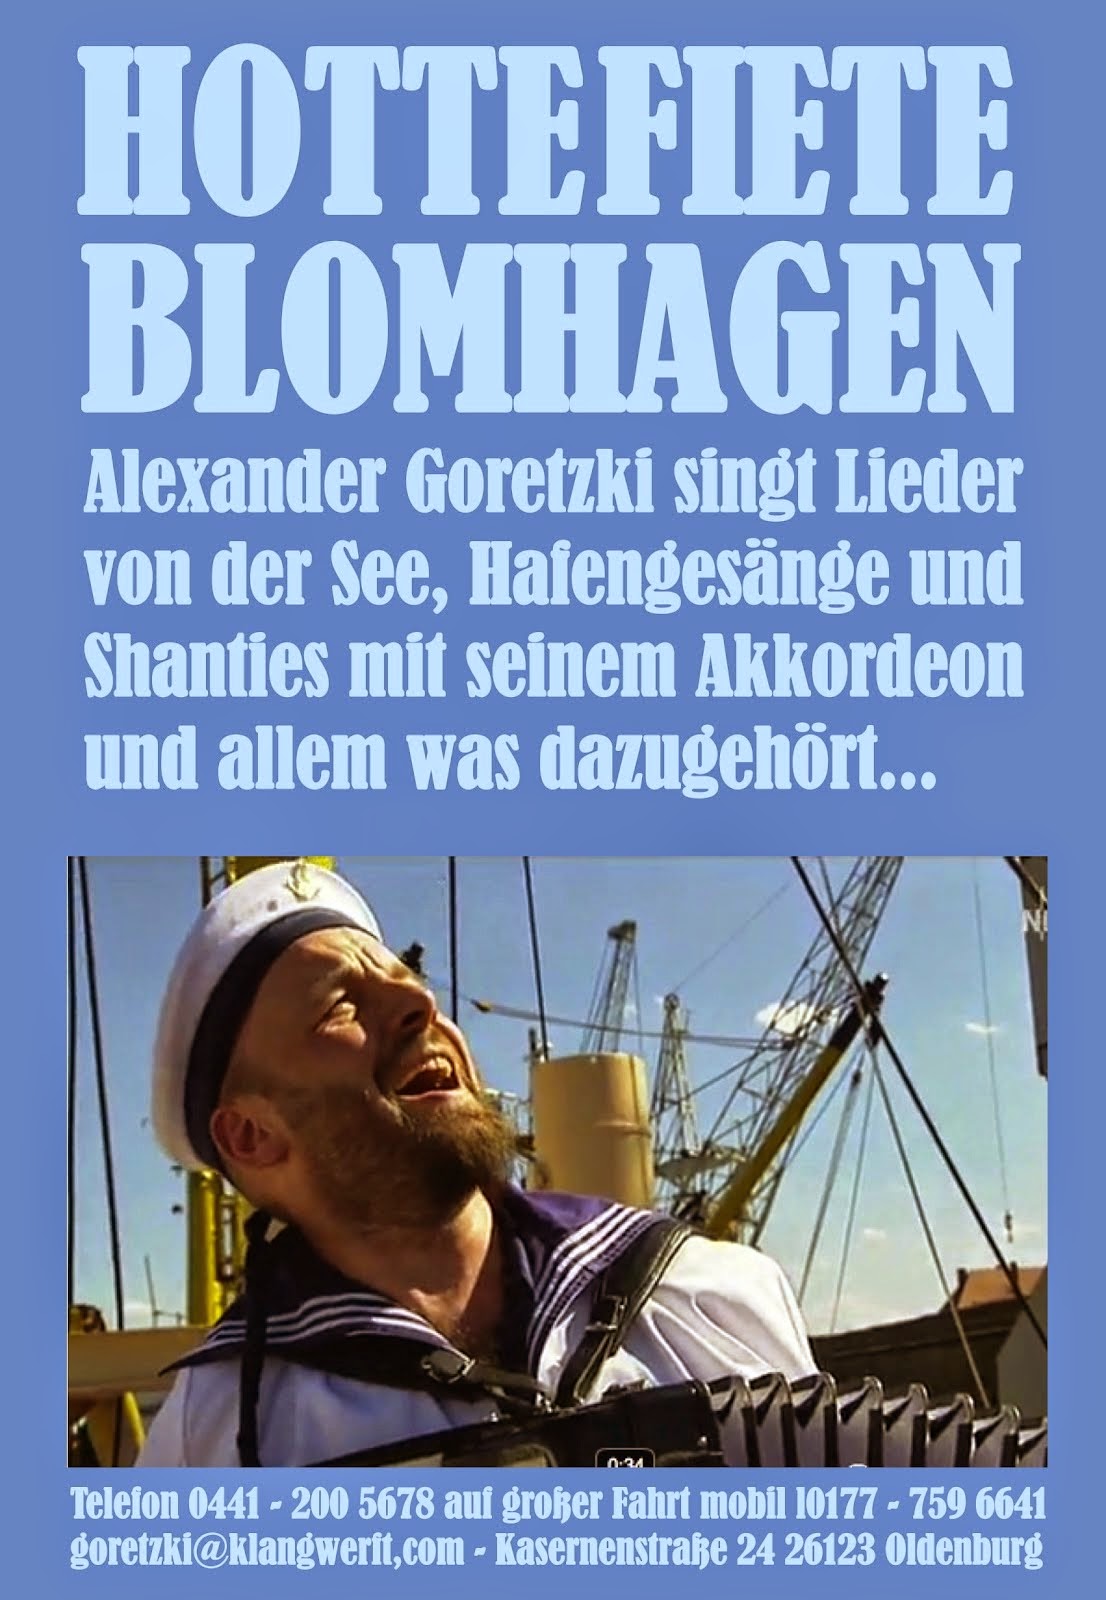 Hottefiete Blomhagen